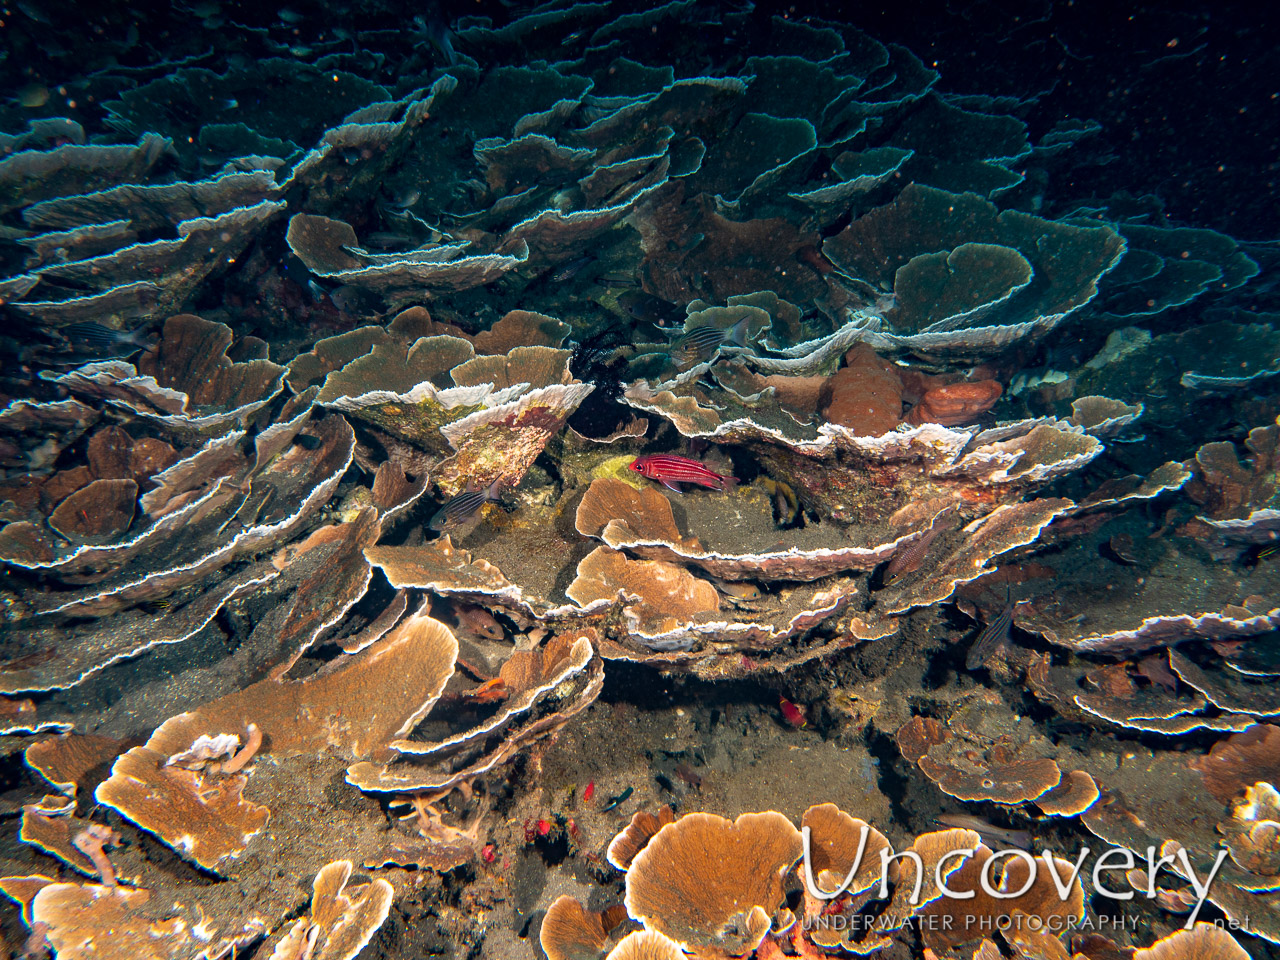 Coral shot in Indonesia|Bali|Tulamben|Bulakan Reef